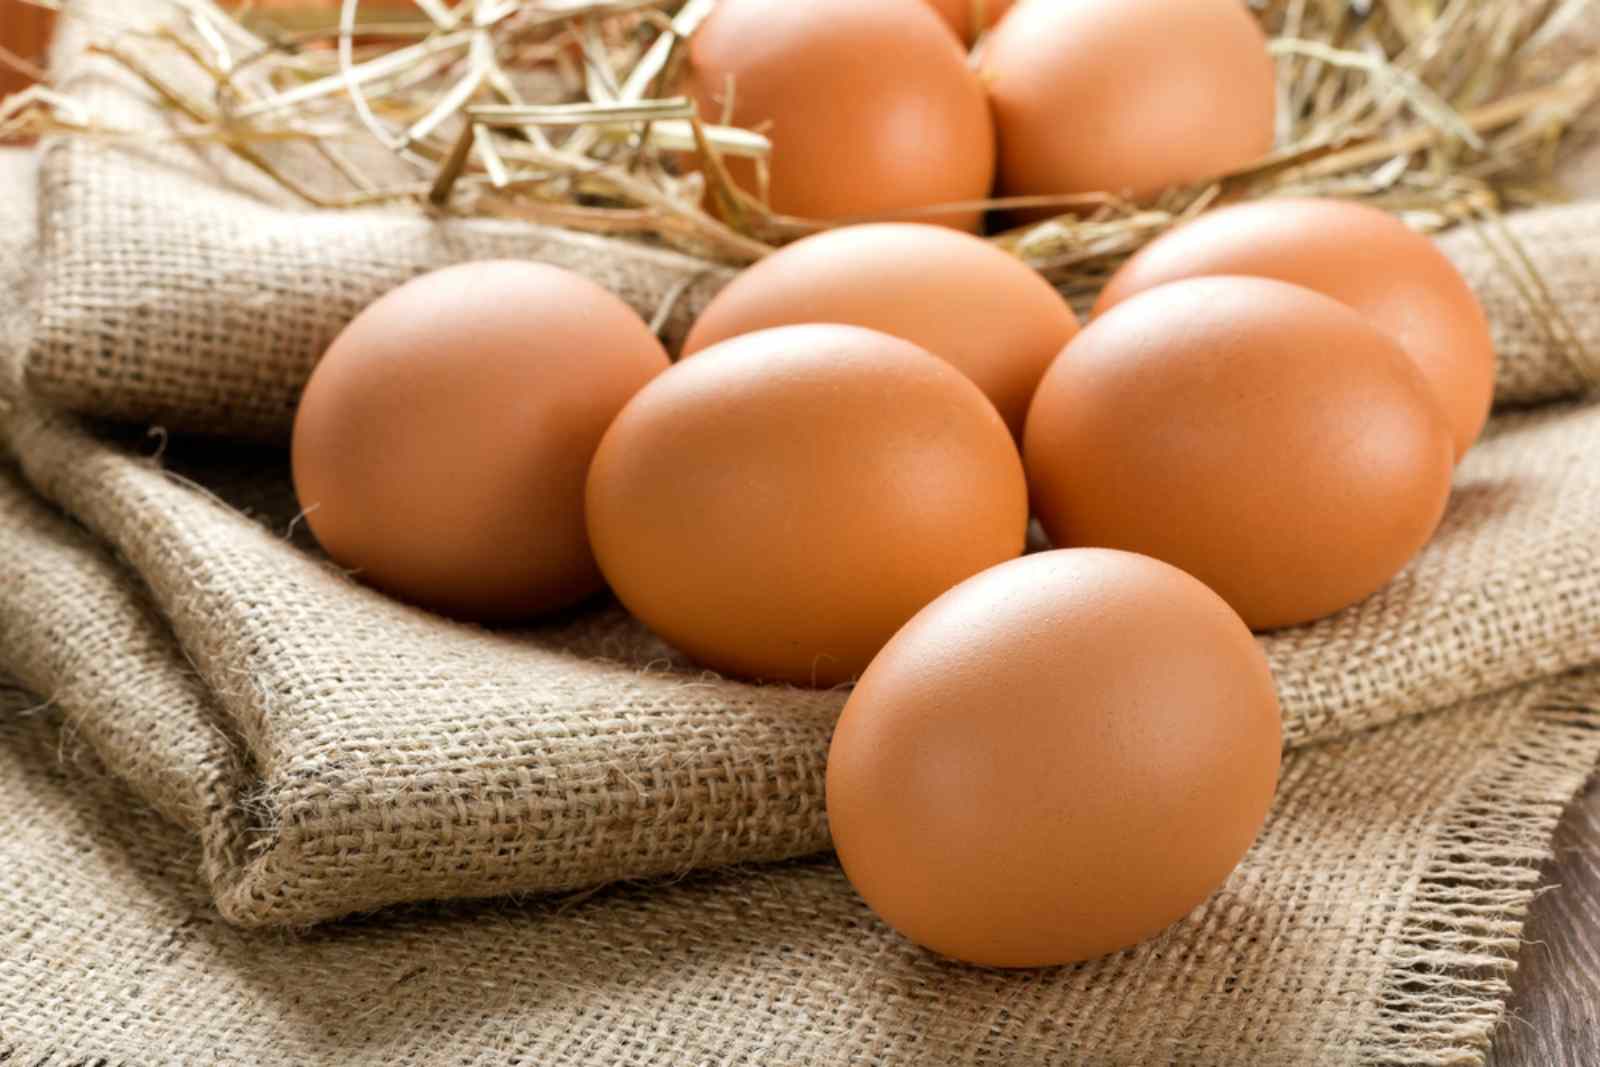 Bảo quản trứng trong ngăn đá tủ lạnh có thể khiến vỏ trứng bị vỡ